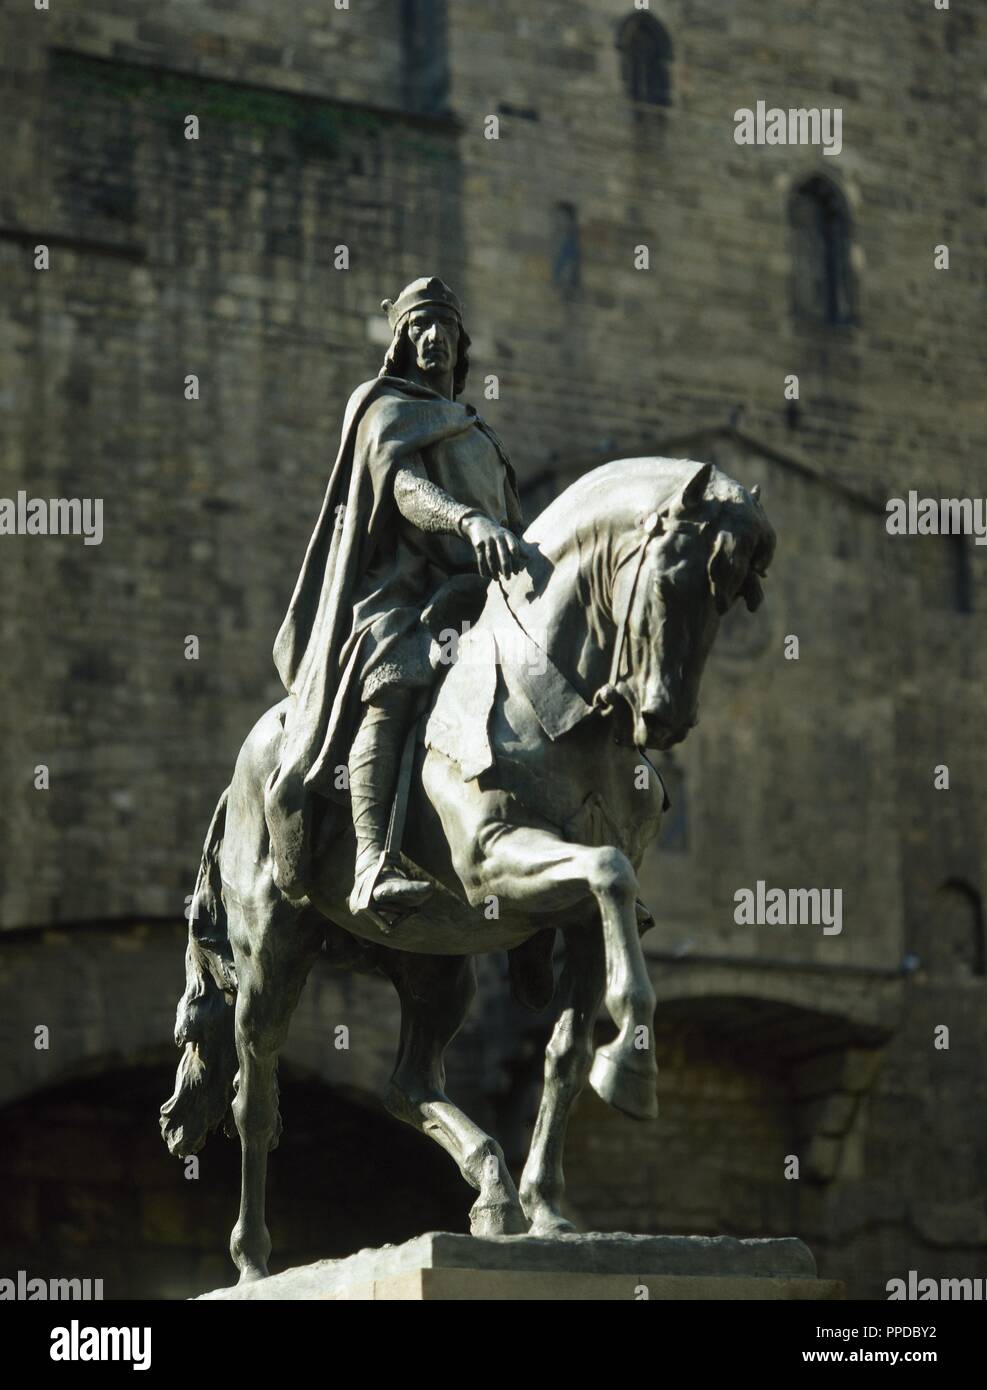 Statue du Comte de Barcelone, Ramon Berenguer III (1082-1131) par Josep Llimona. Famille noble de Barcelone. Barcelone, Catalogne, Espagne. Banque D'Images